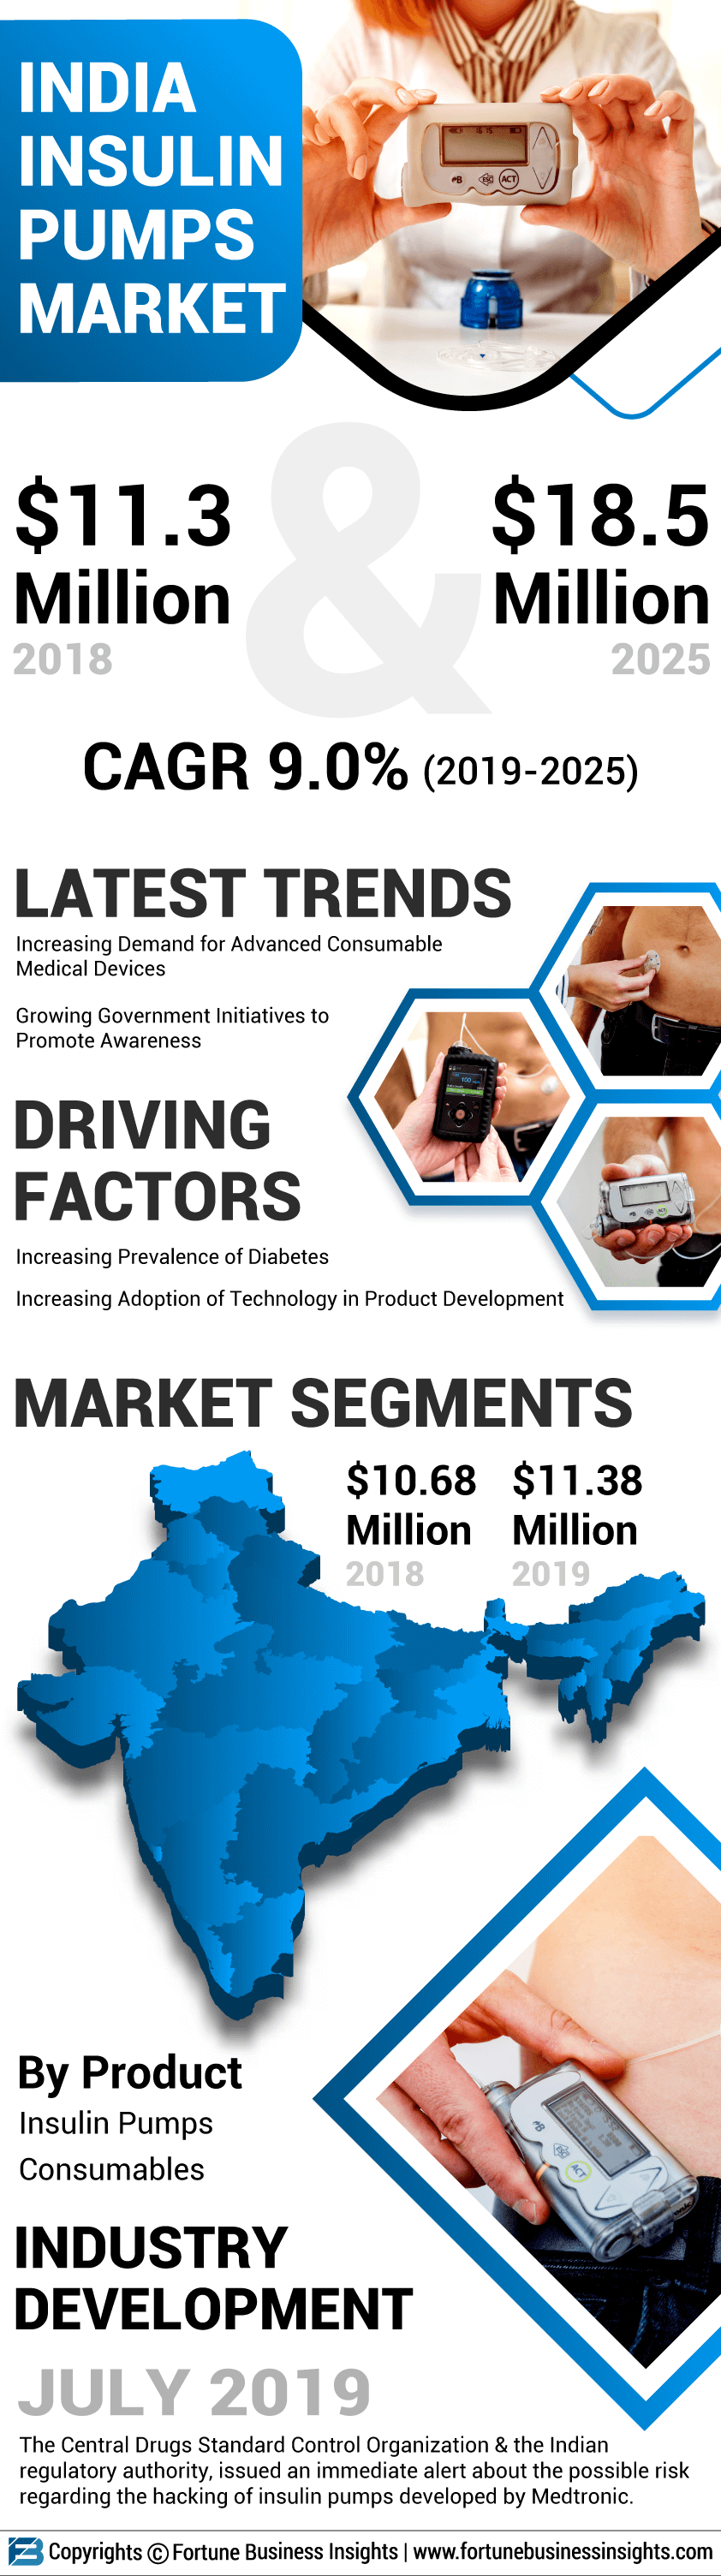 India Insulin Pumps Market 